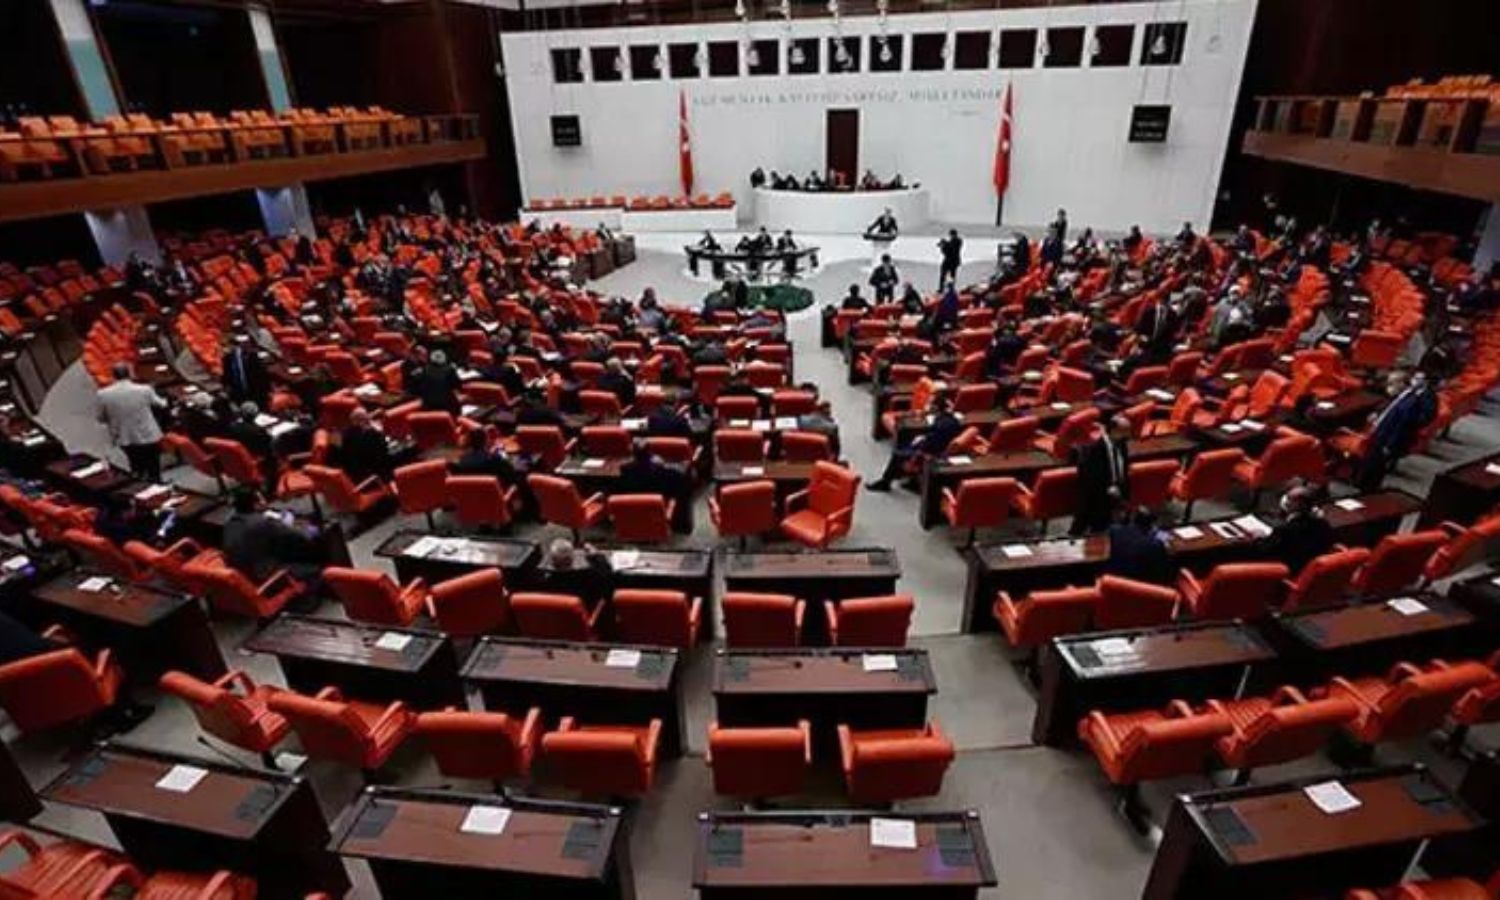 يجتمع البرلمان التركي في تشرين الثاني الحالي لاتخاذ قرار بالموافقة أو رفض انضمام السويد لحلف الناتو (حرييت)